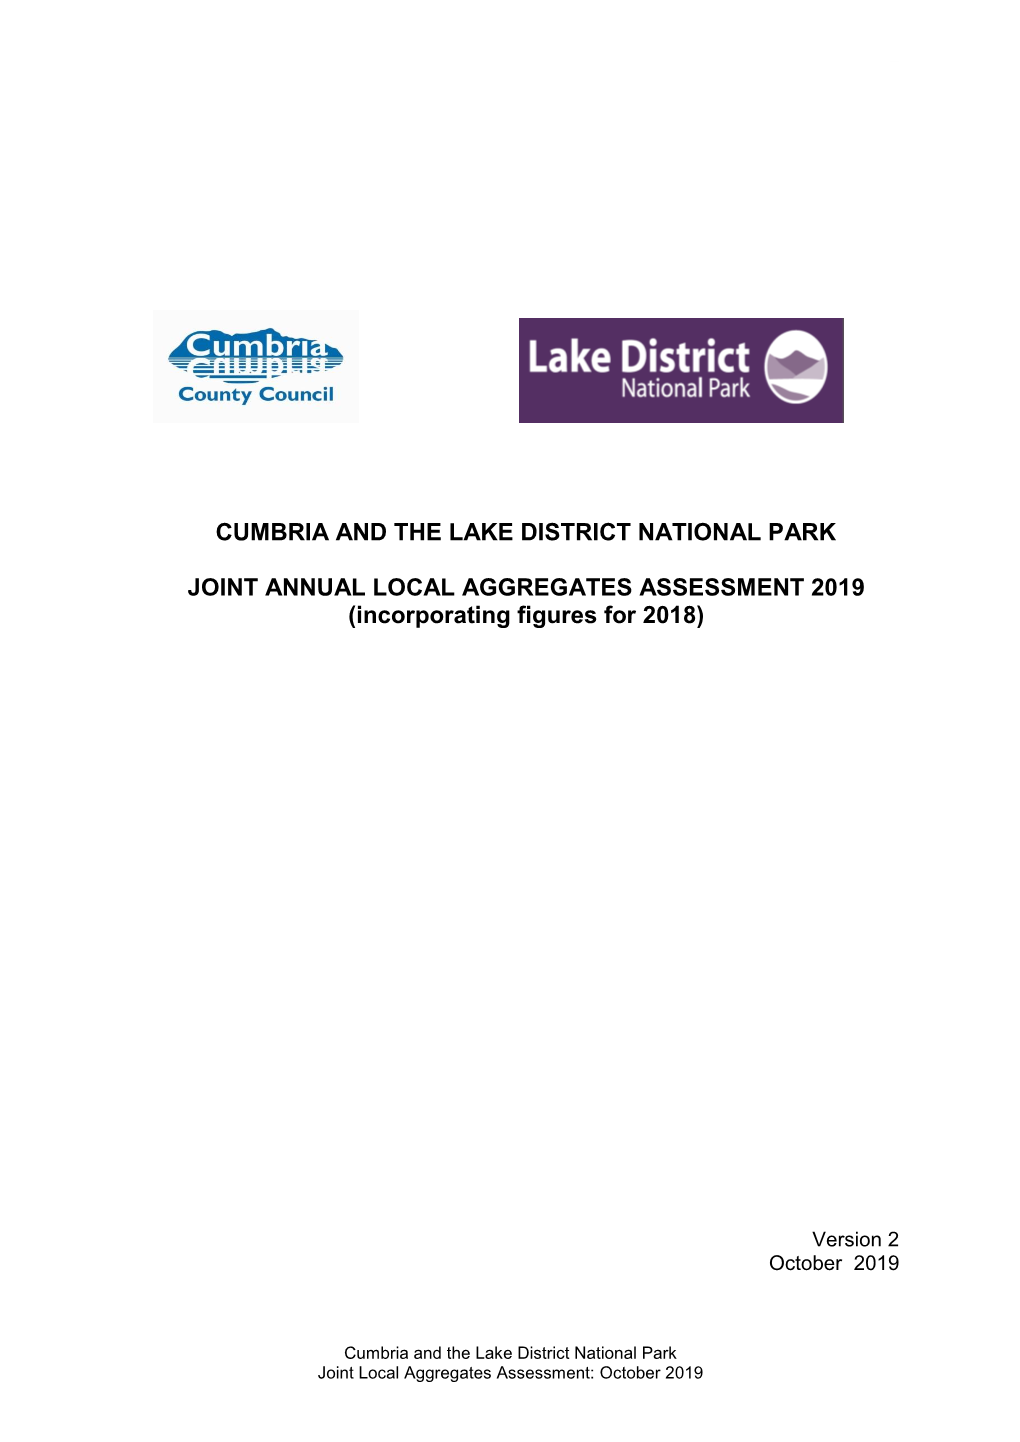 Cumbria Local Aggregates Assessment 2019 – Full Report